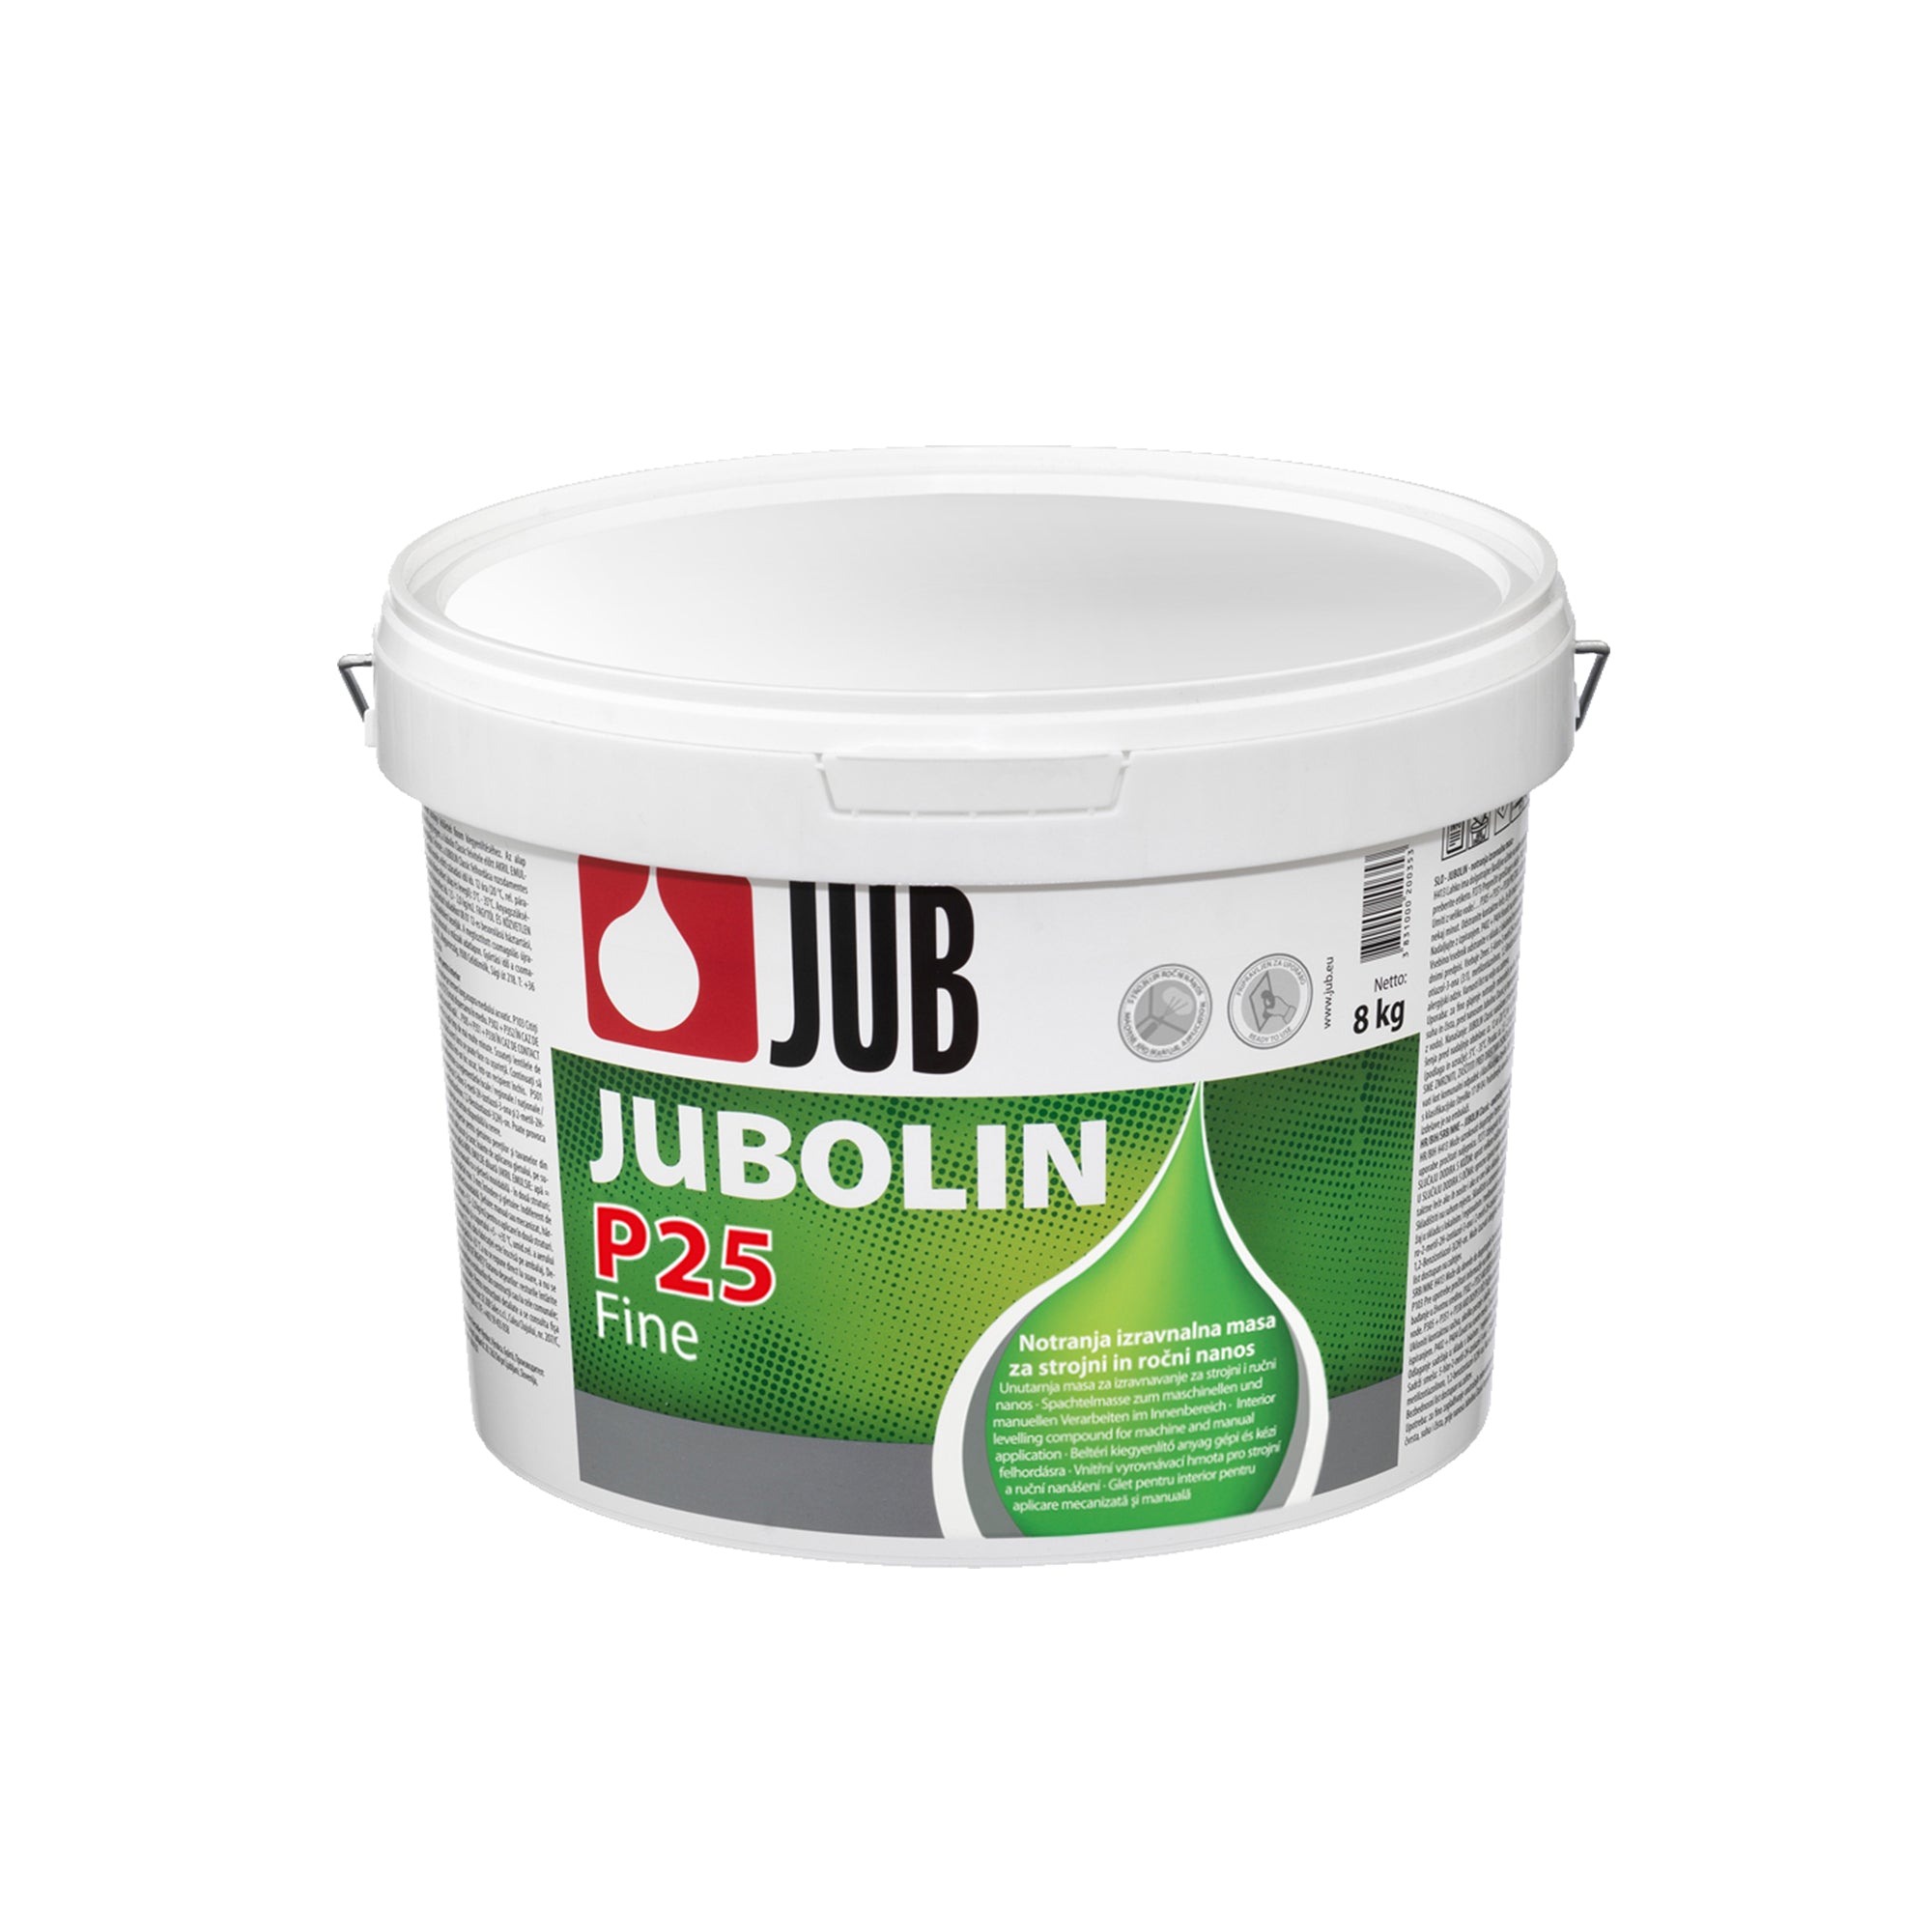 JUB JUBOLIN P 25 Fine disperzný stierkový tmel 8 kg